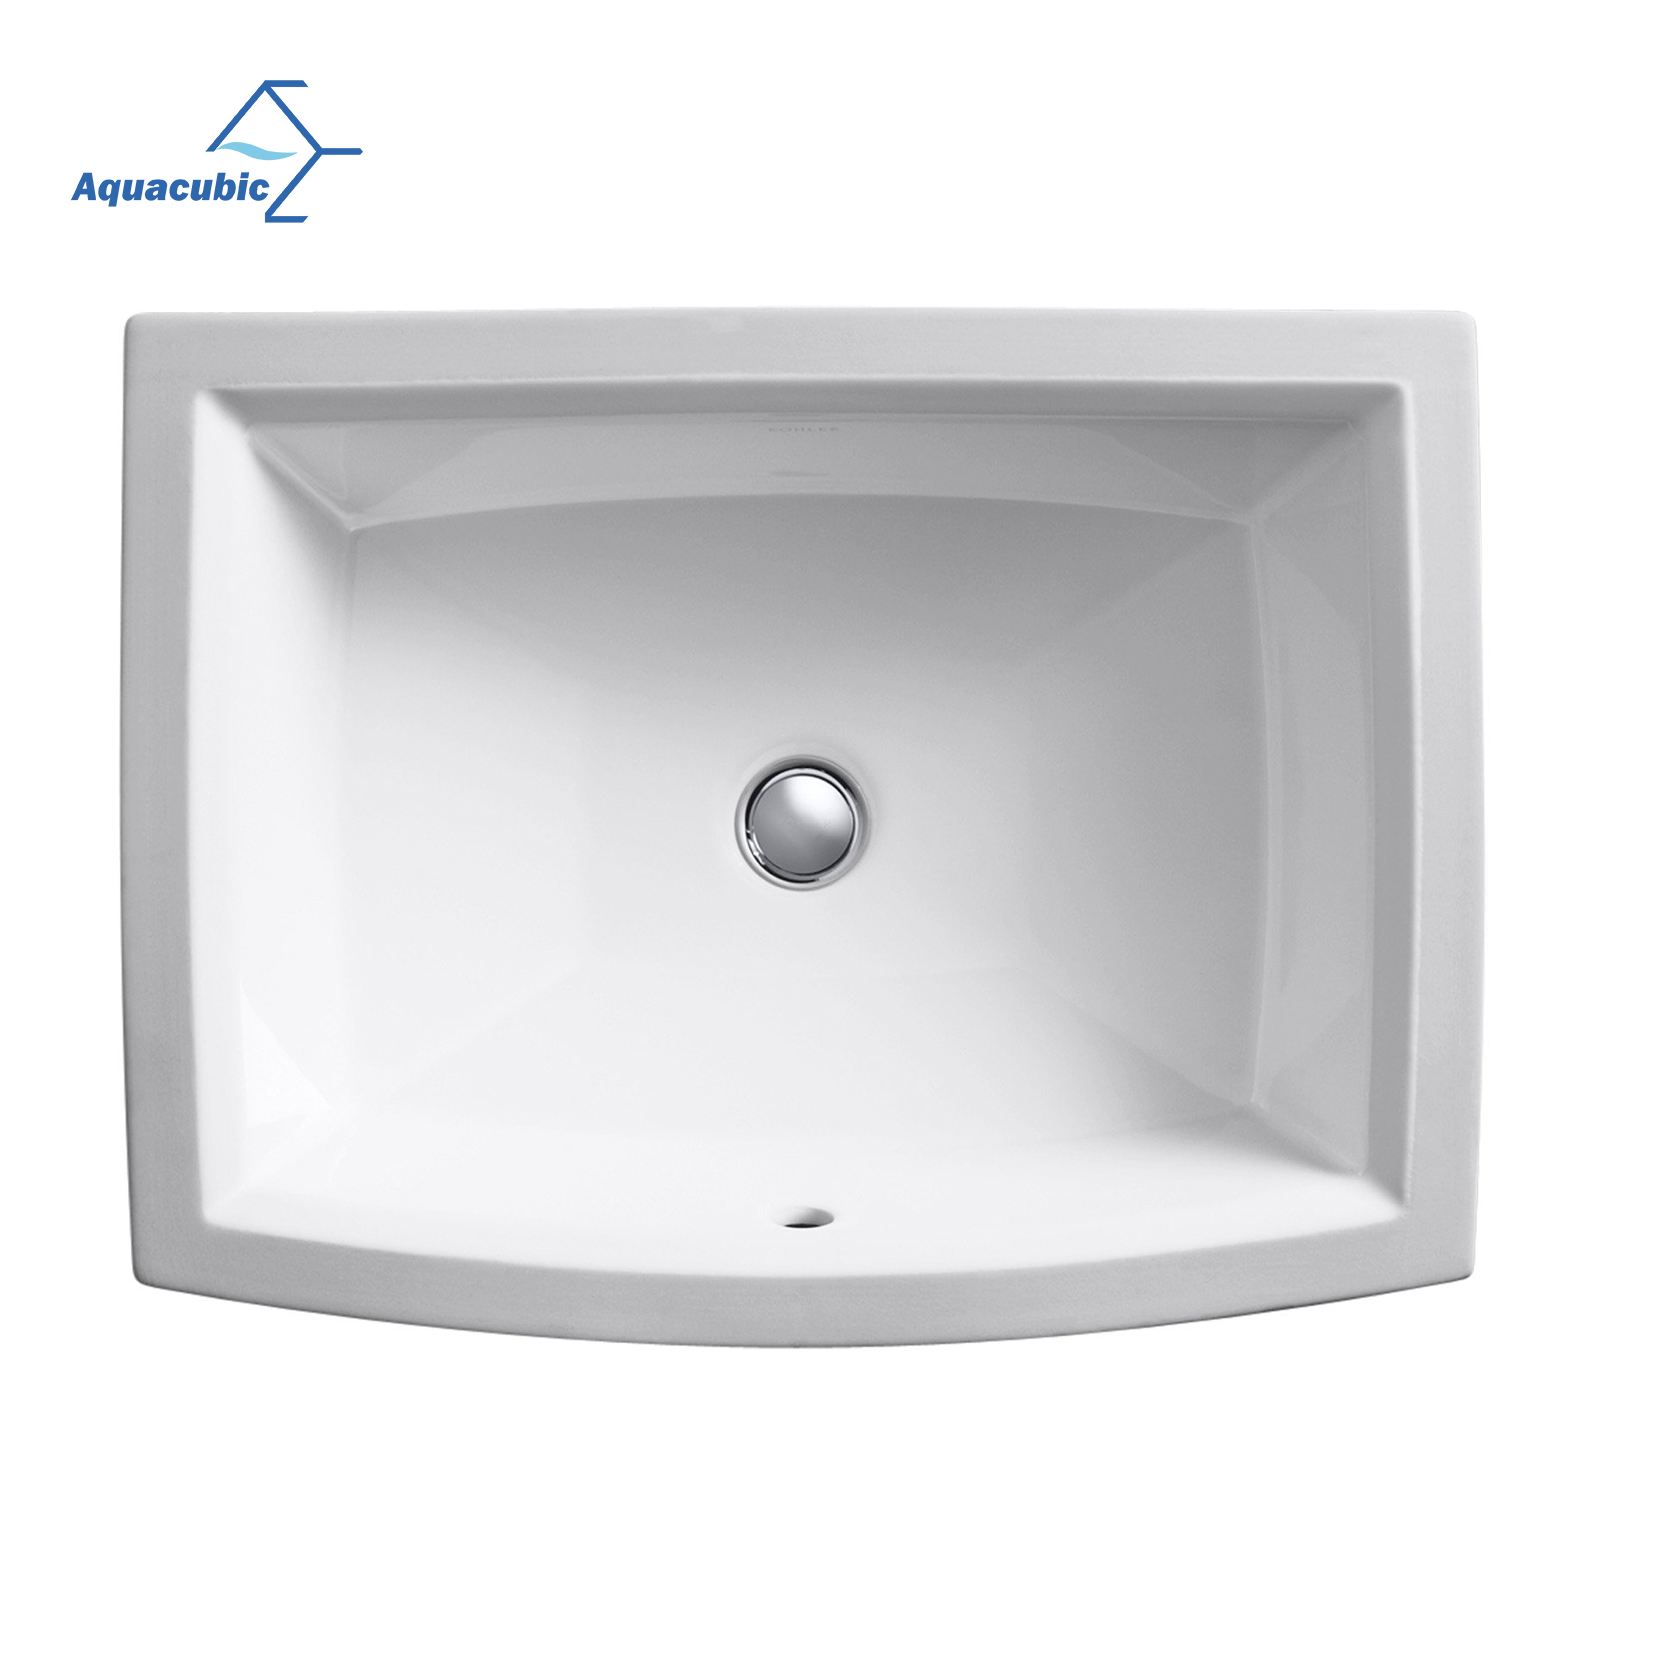 الصين الصانع التصميم الحديث المنزلية بالوعة الأبيض مستطيلة سيراميك الحمام غسل اليد المصارف Undermount 